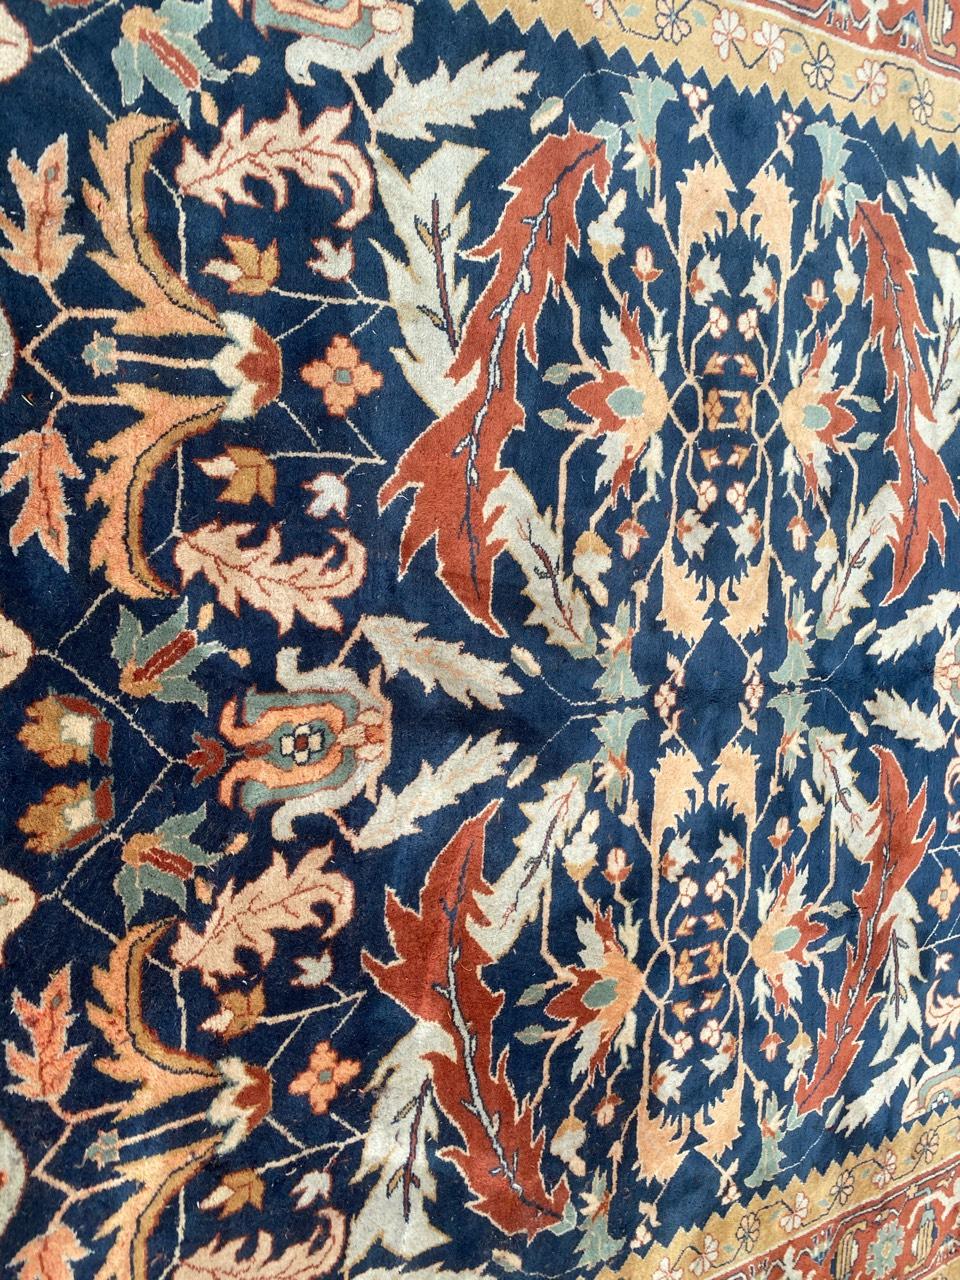 Schöne persische Design-Teppich mit schönen Farben mit blau, orange, gelb und grün, vollständig und fein von Hand mit Wolle Samt auf Baumwollbasis geknüpft.

✨✨✨
